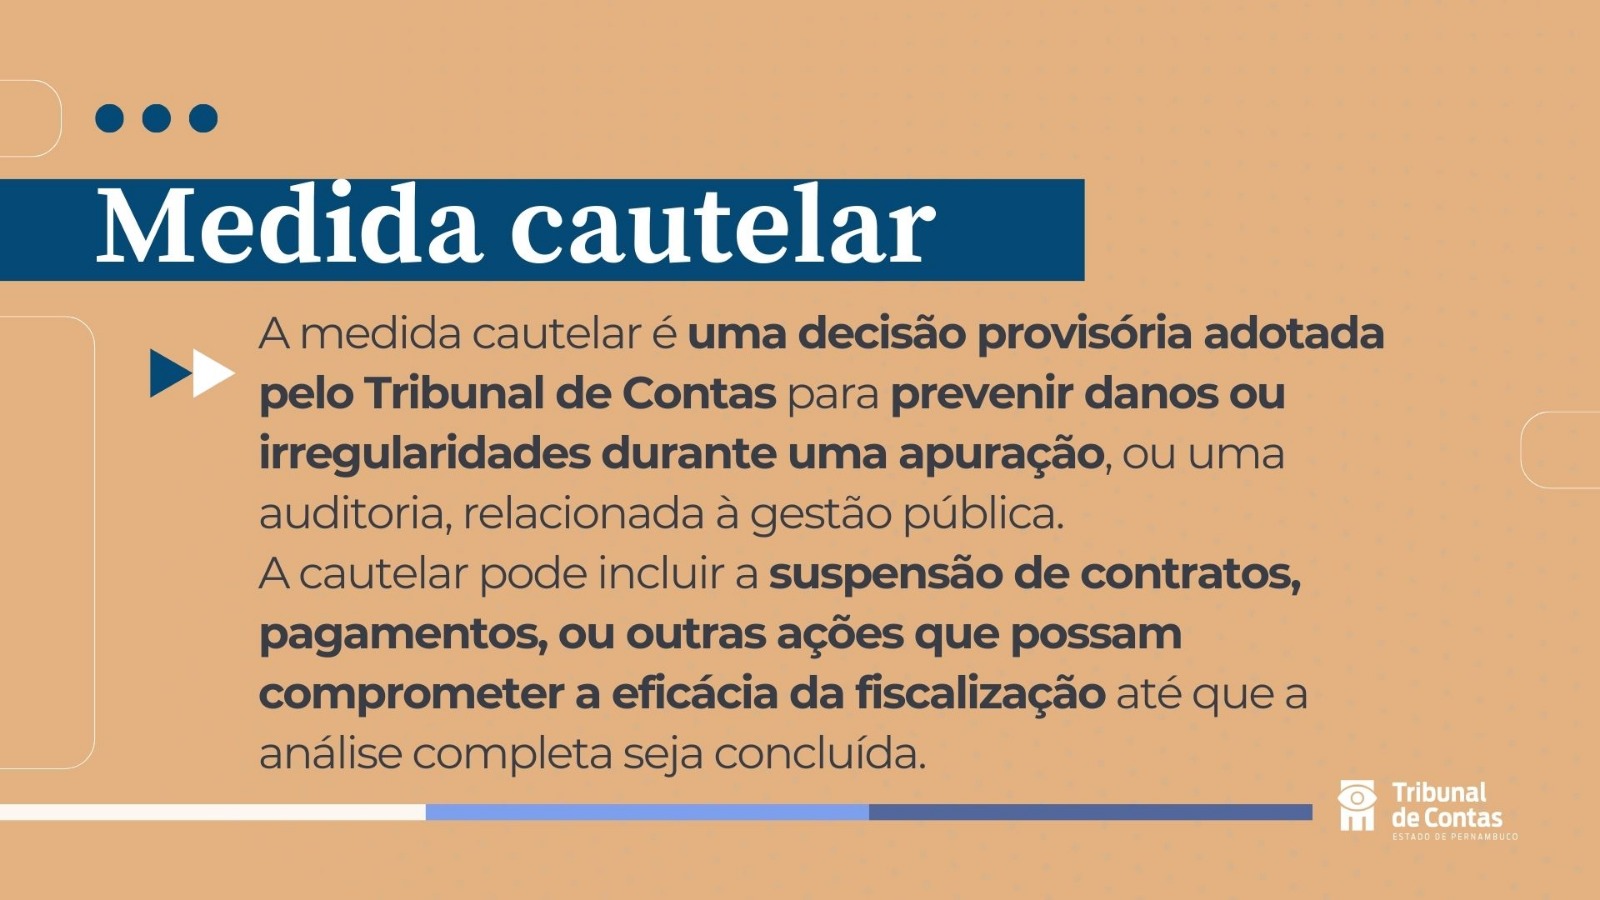 A capacidade do Brasil de recuperar ativos ilícitos: Um diagnóstico de  acordo com os 9 princípios da recuperação de ativos